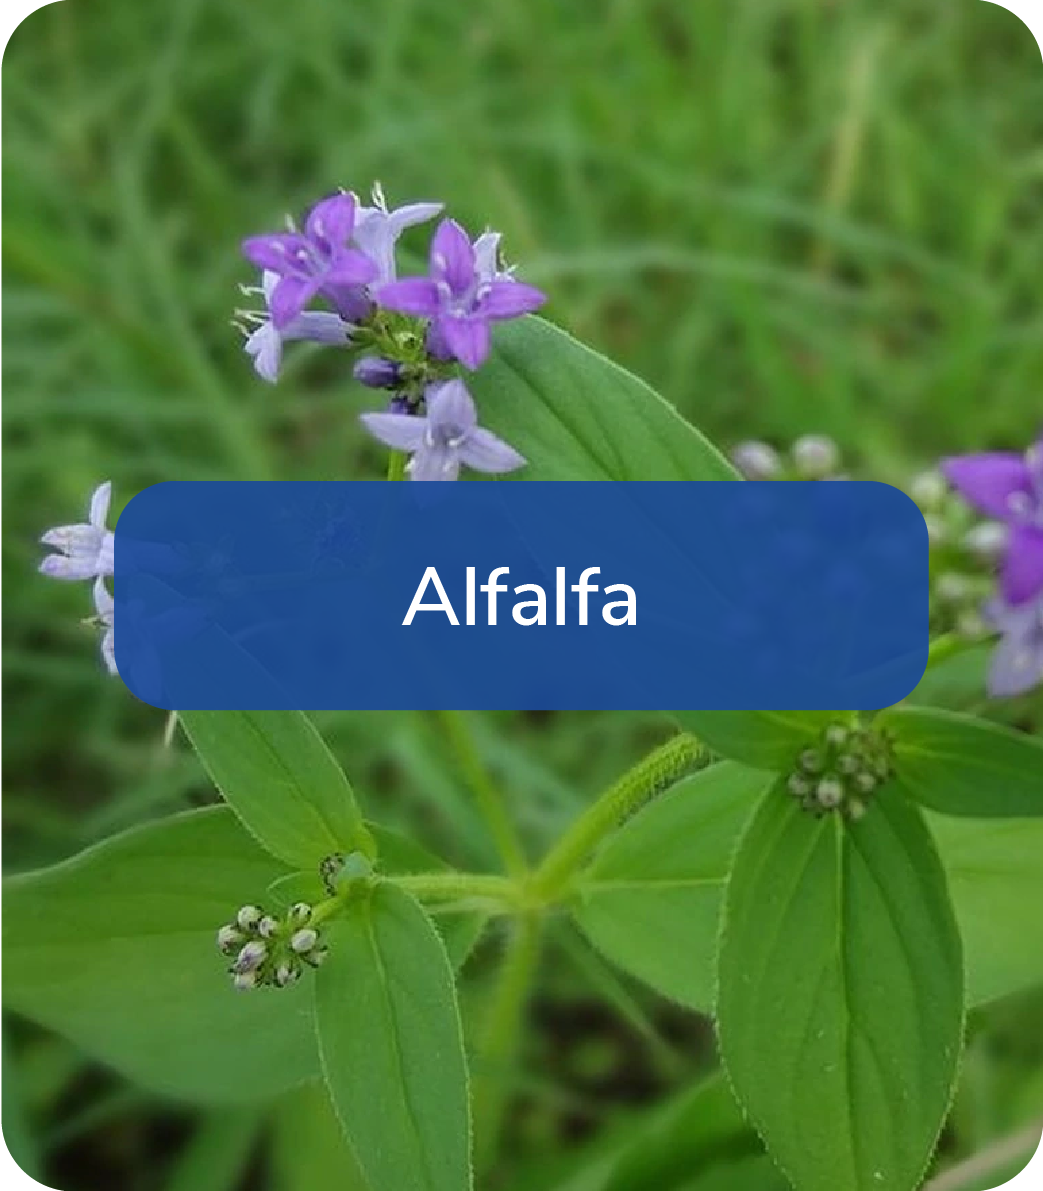 alfalfa